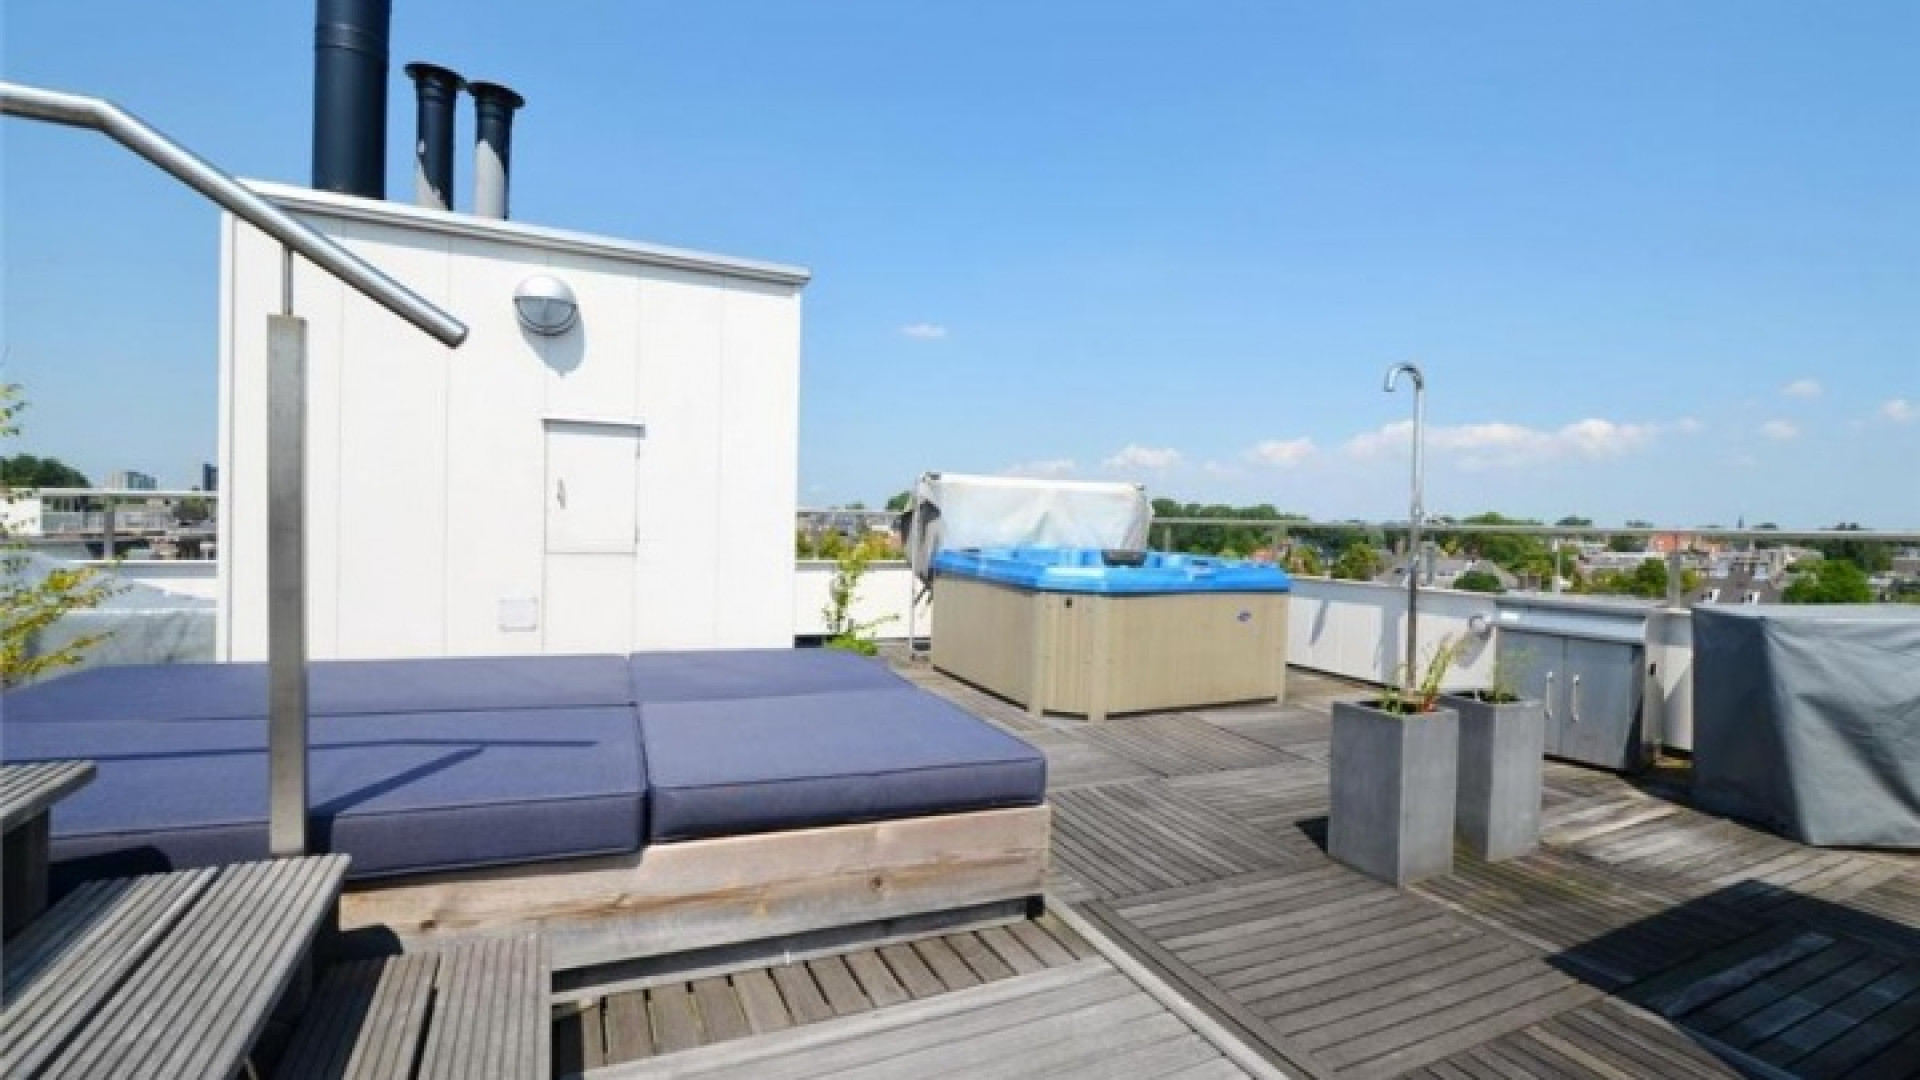 Frank Rijkaard zet zijn zeer luxe huis in Amsterdam Zuid te koop. Zie foto's 28